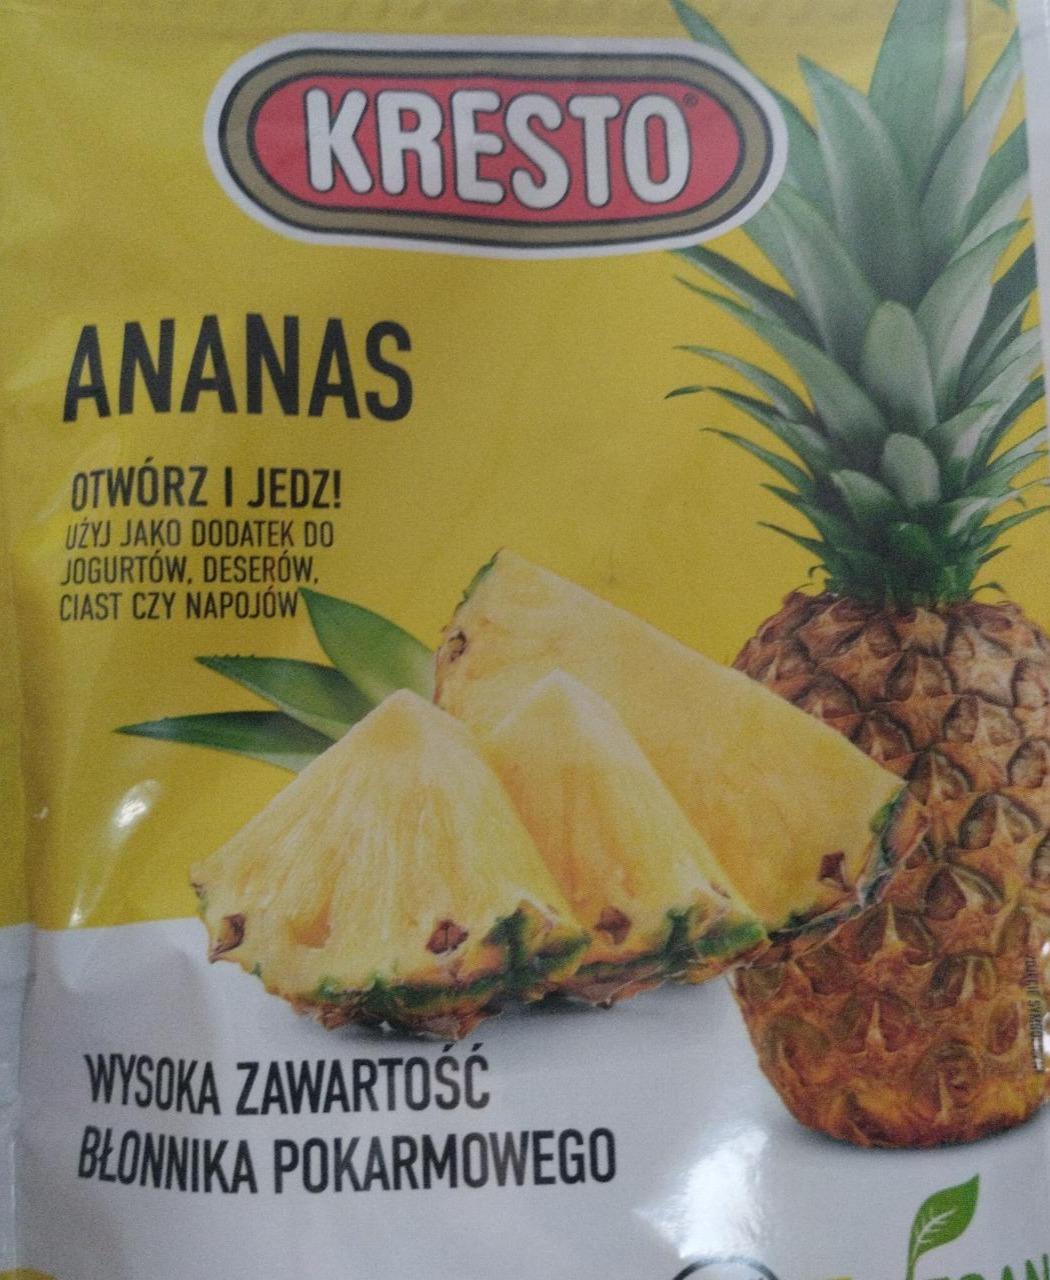 Zdjęcia - Ananas w kawałkach kresto